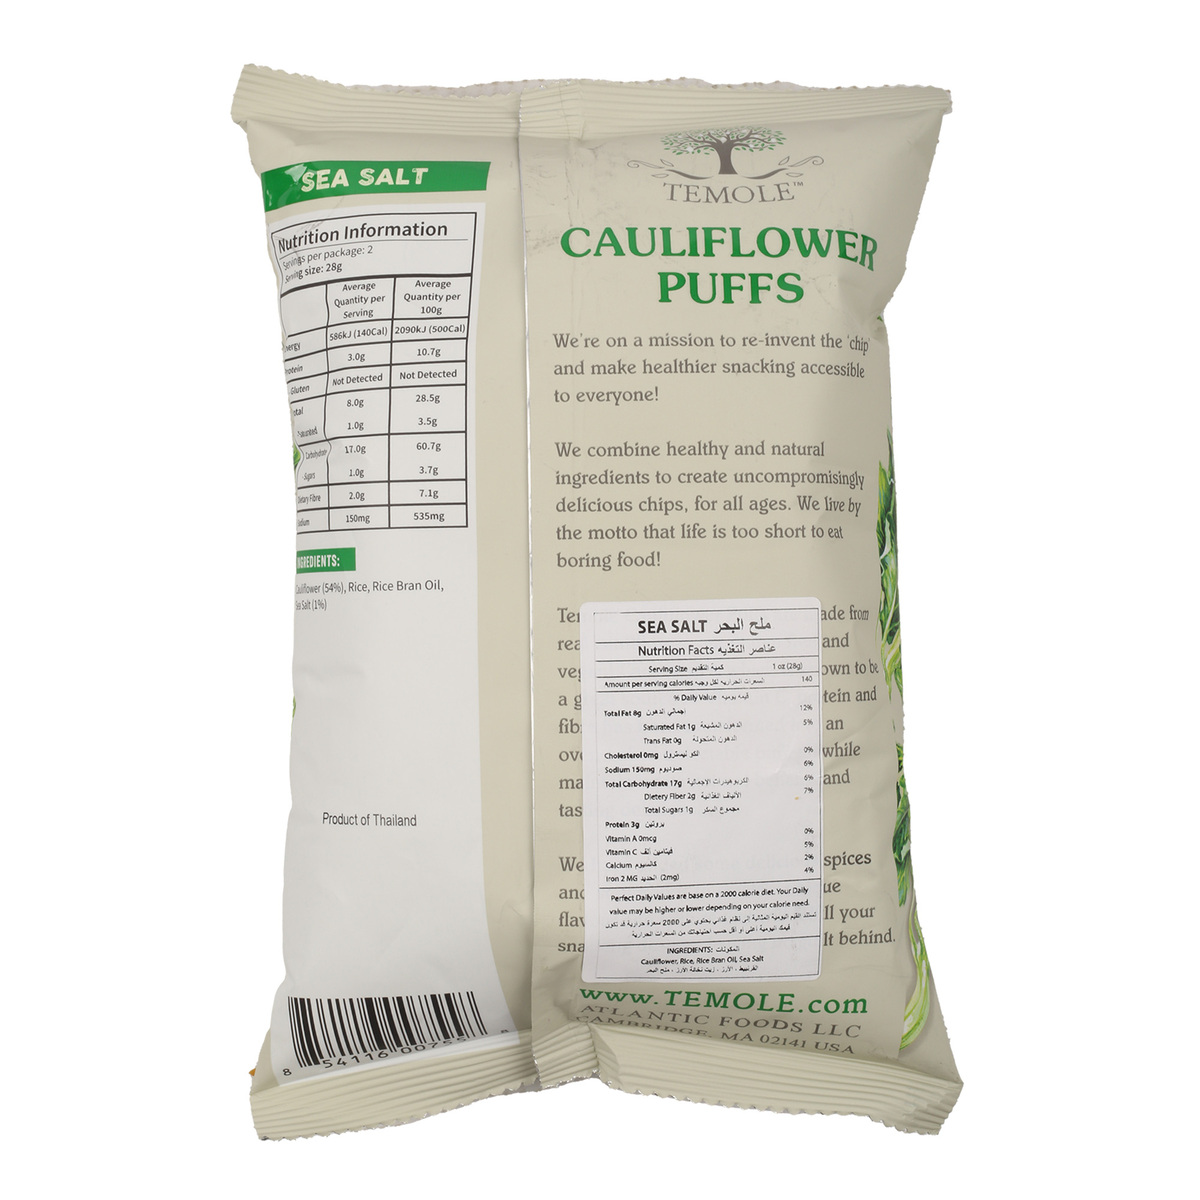 Temole Sea Salt Cauliflower Puffs 56g